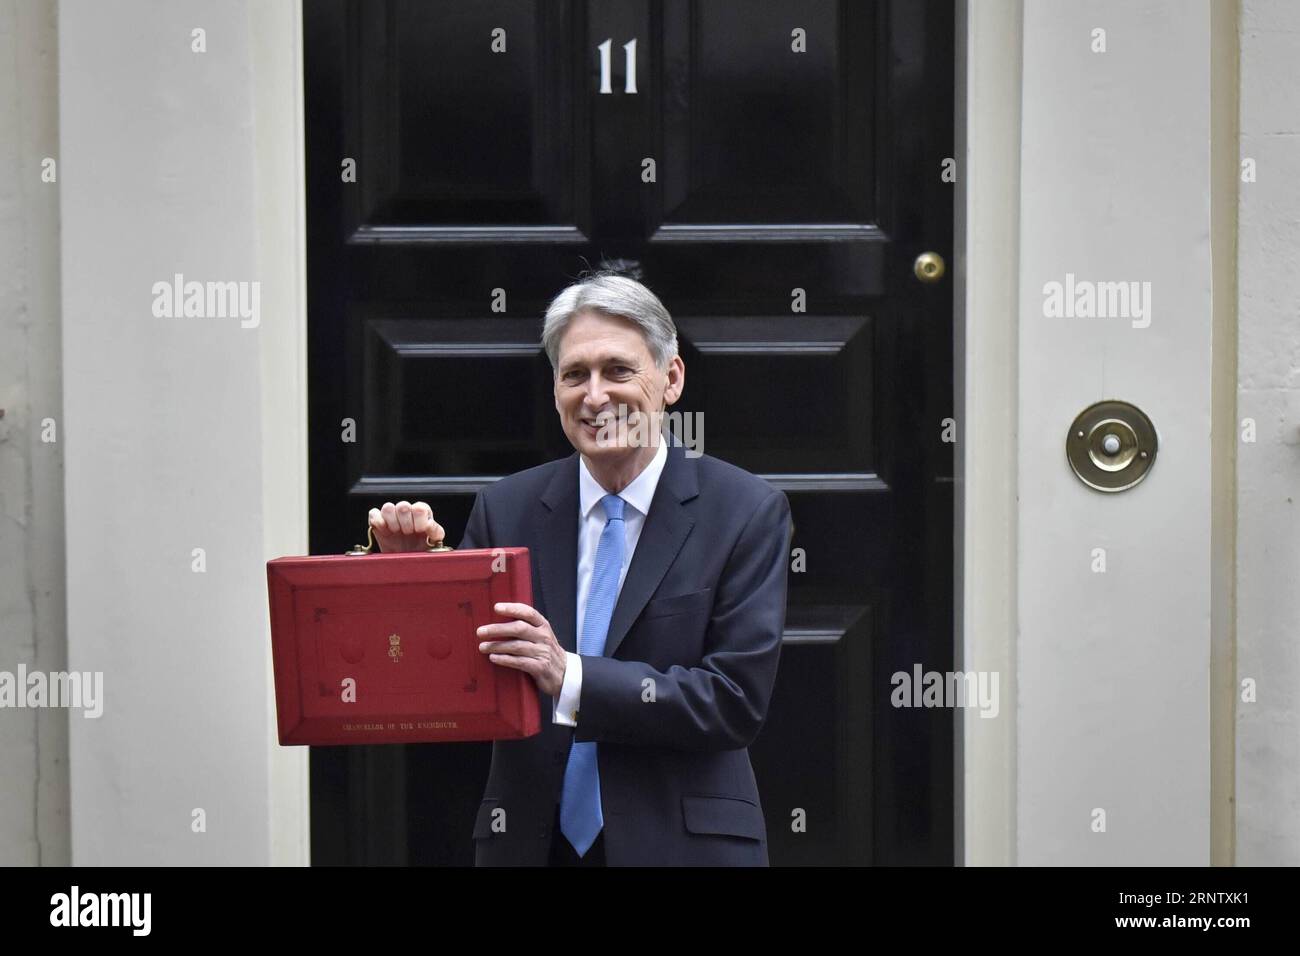 (171122) -- LONDRES, 22 novembre 2017 -- le chancelier de l'Échiquier britannique Philip Hammond tient la boîte budgétaire alors qu'il quitte le 11 Downing Street pour remettre son budget au Parlement à Londres, en Grande-Bretagne, le 22 novembre 2017. Hammond a dévoilé mercredi le budget principal pour l'année à venir dans un contexte d'incertitude liée au Brexit et de croissance économique modérée. BRITAIN-LONDON-EXCHEQUER-CHANCELLOR-BUDGET-DÉVOILEMENT STEPHENXCHUNG PUBLICATIONXNOTXINXCHN Banque D'Images